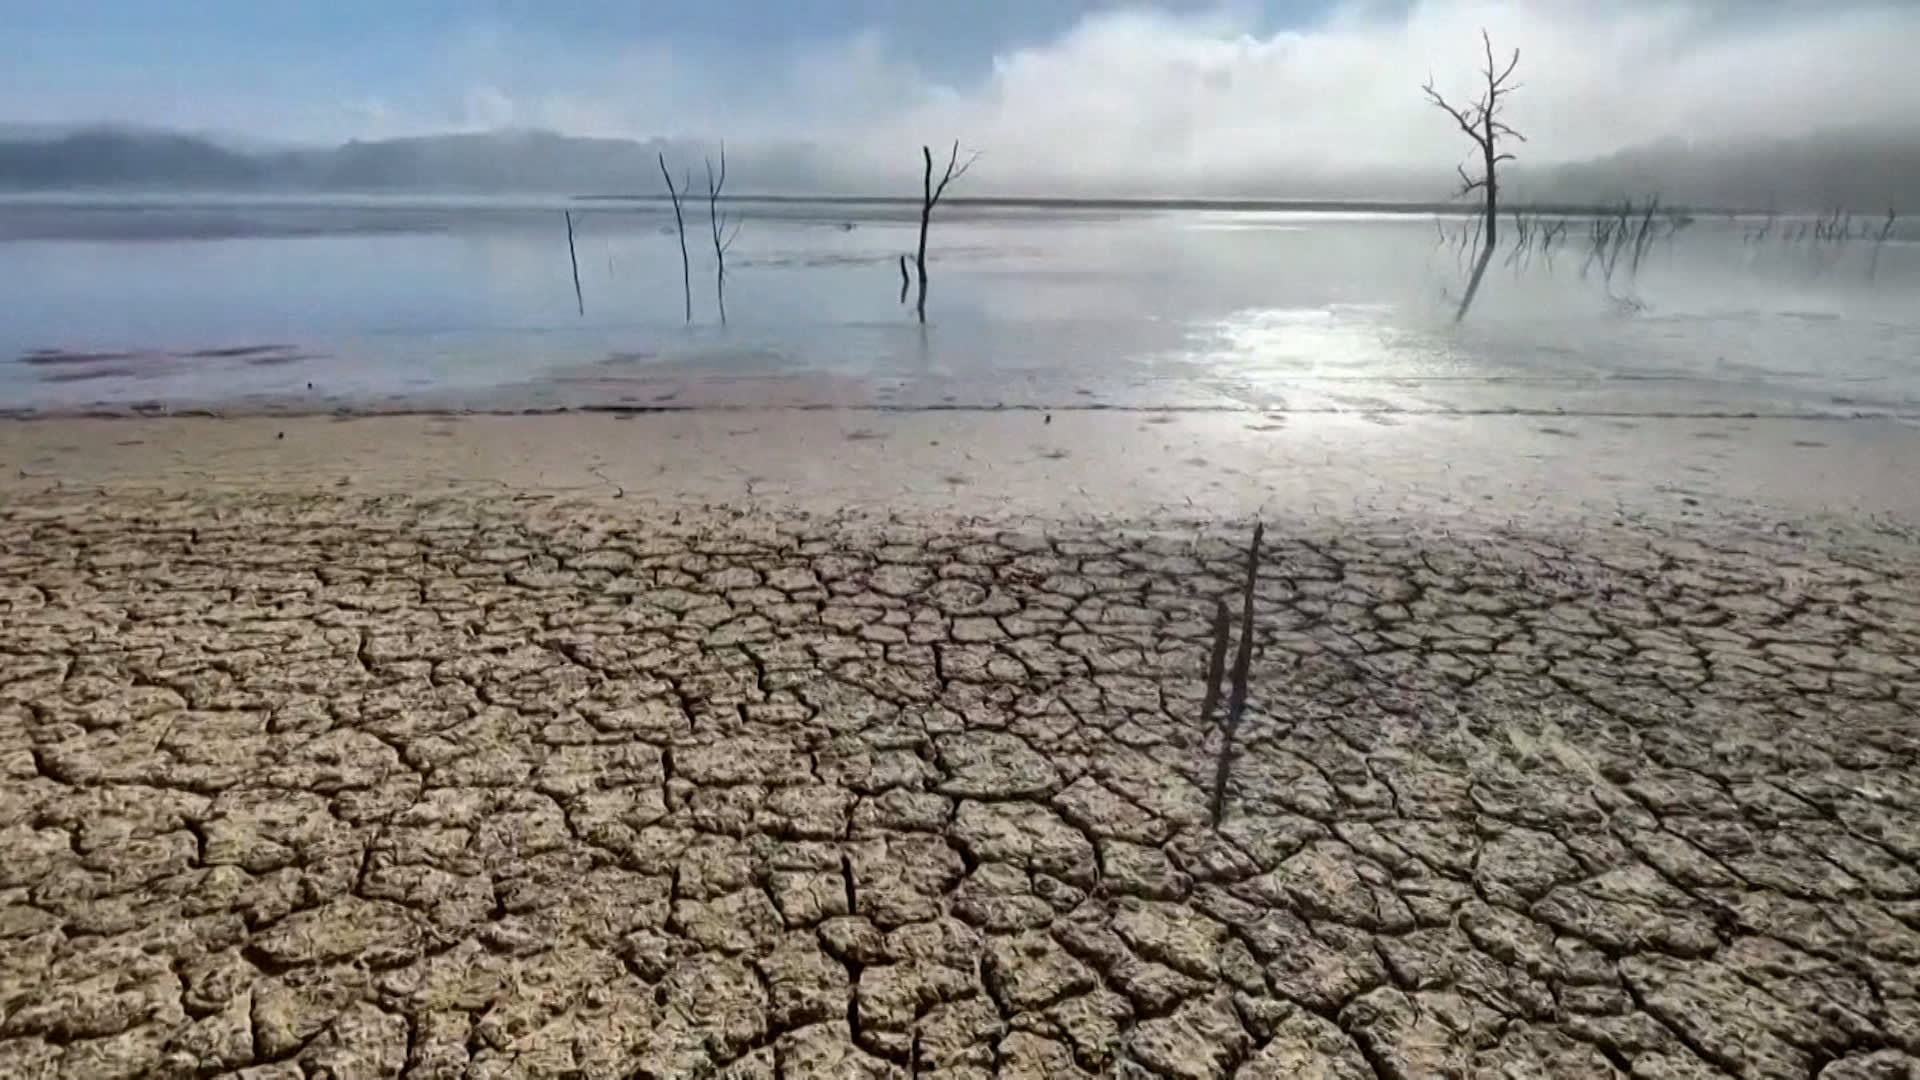 أرض متصدعة وأشجار ميتة.. شاهد مدى تأثير الجفاف على الأراضي التونسية